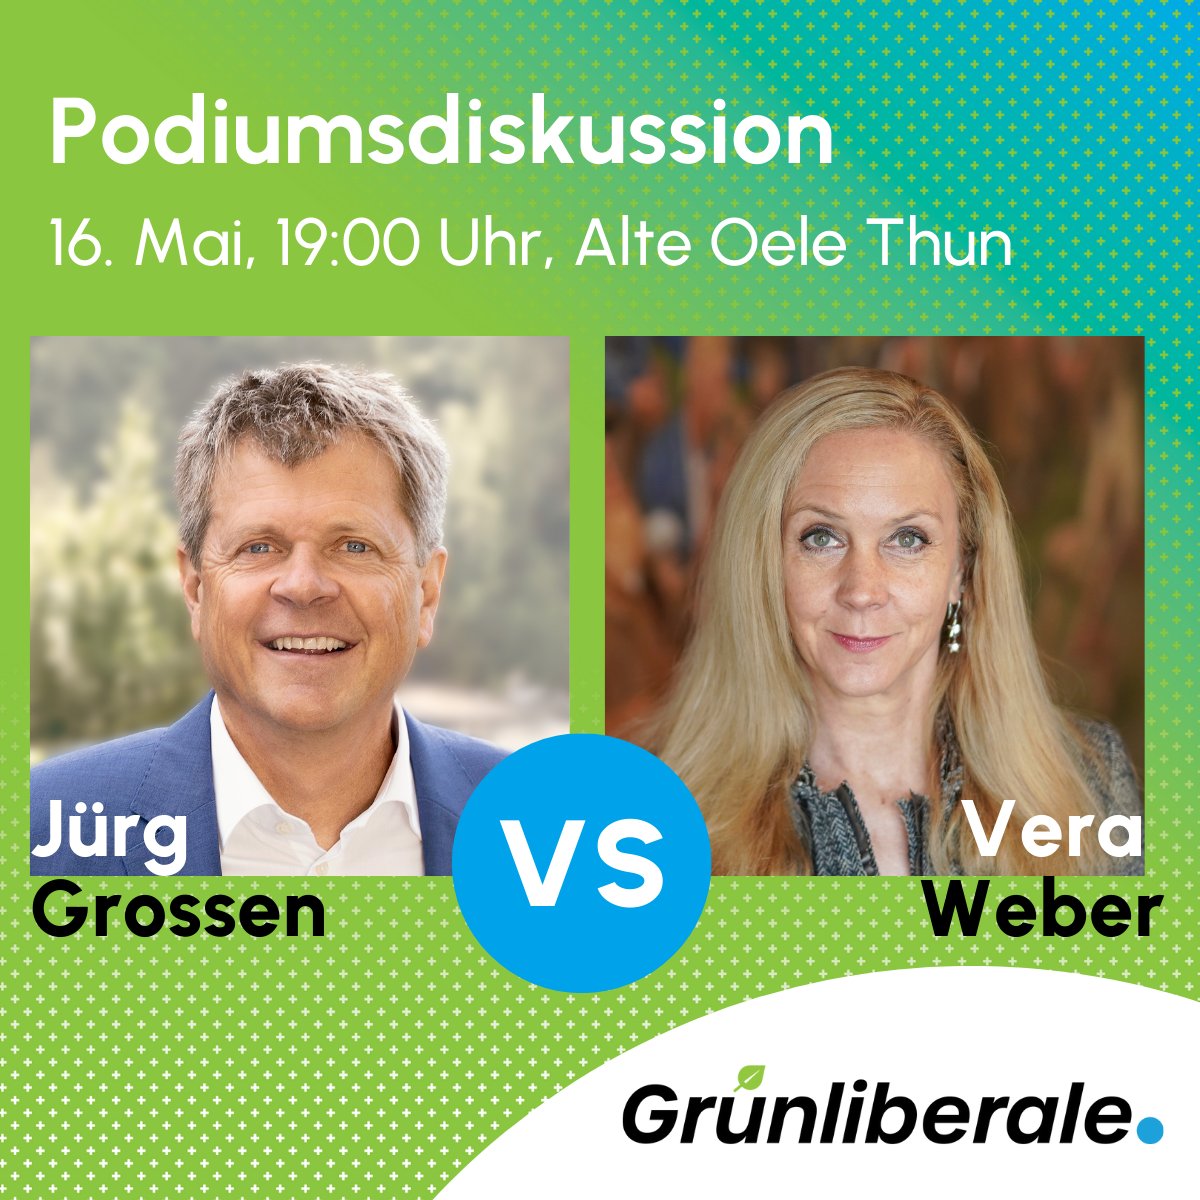 Das gibt eine heisse Debatte: Morgen Abend um 19 Uhr diskutiert unser Co-Präsident @Juerg_Grossen mit Vera Weber im Theater Alte Oele in Thun über das #Stromgesetz. Nicht verpassen! #StromgesetzJa #chvote #abst24